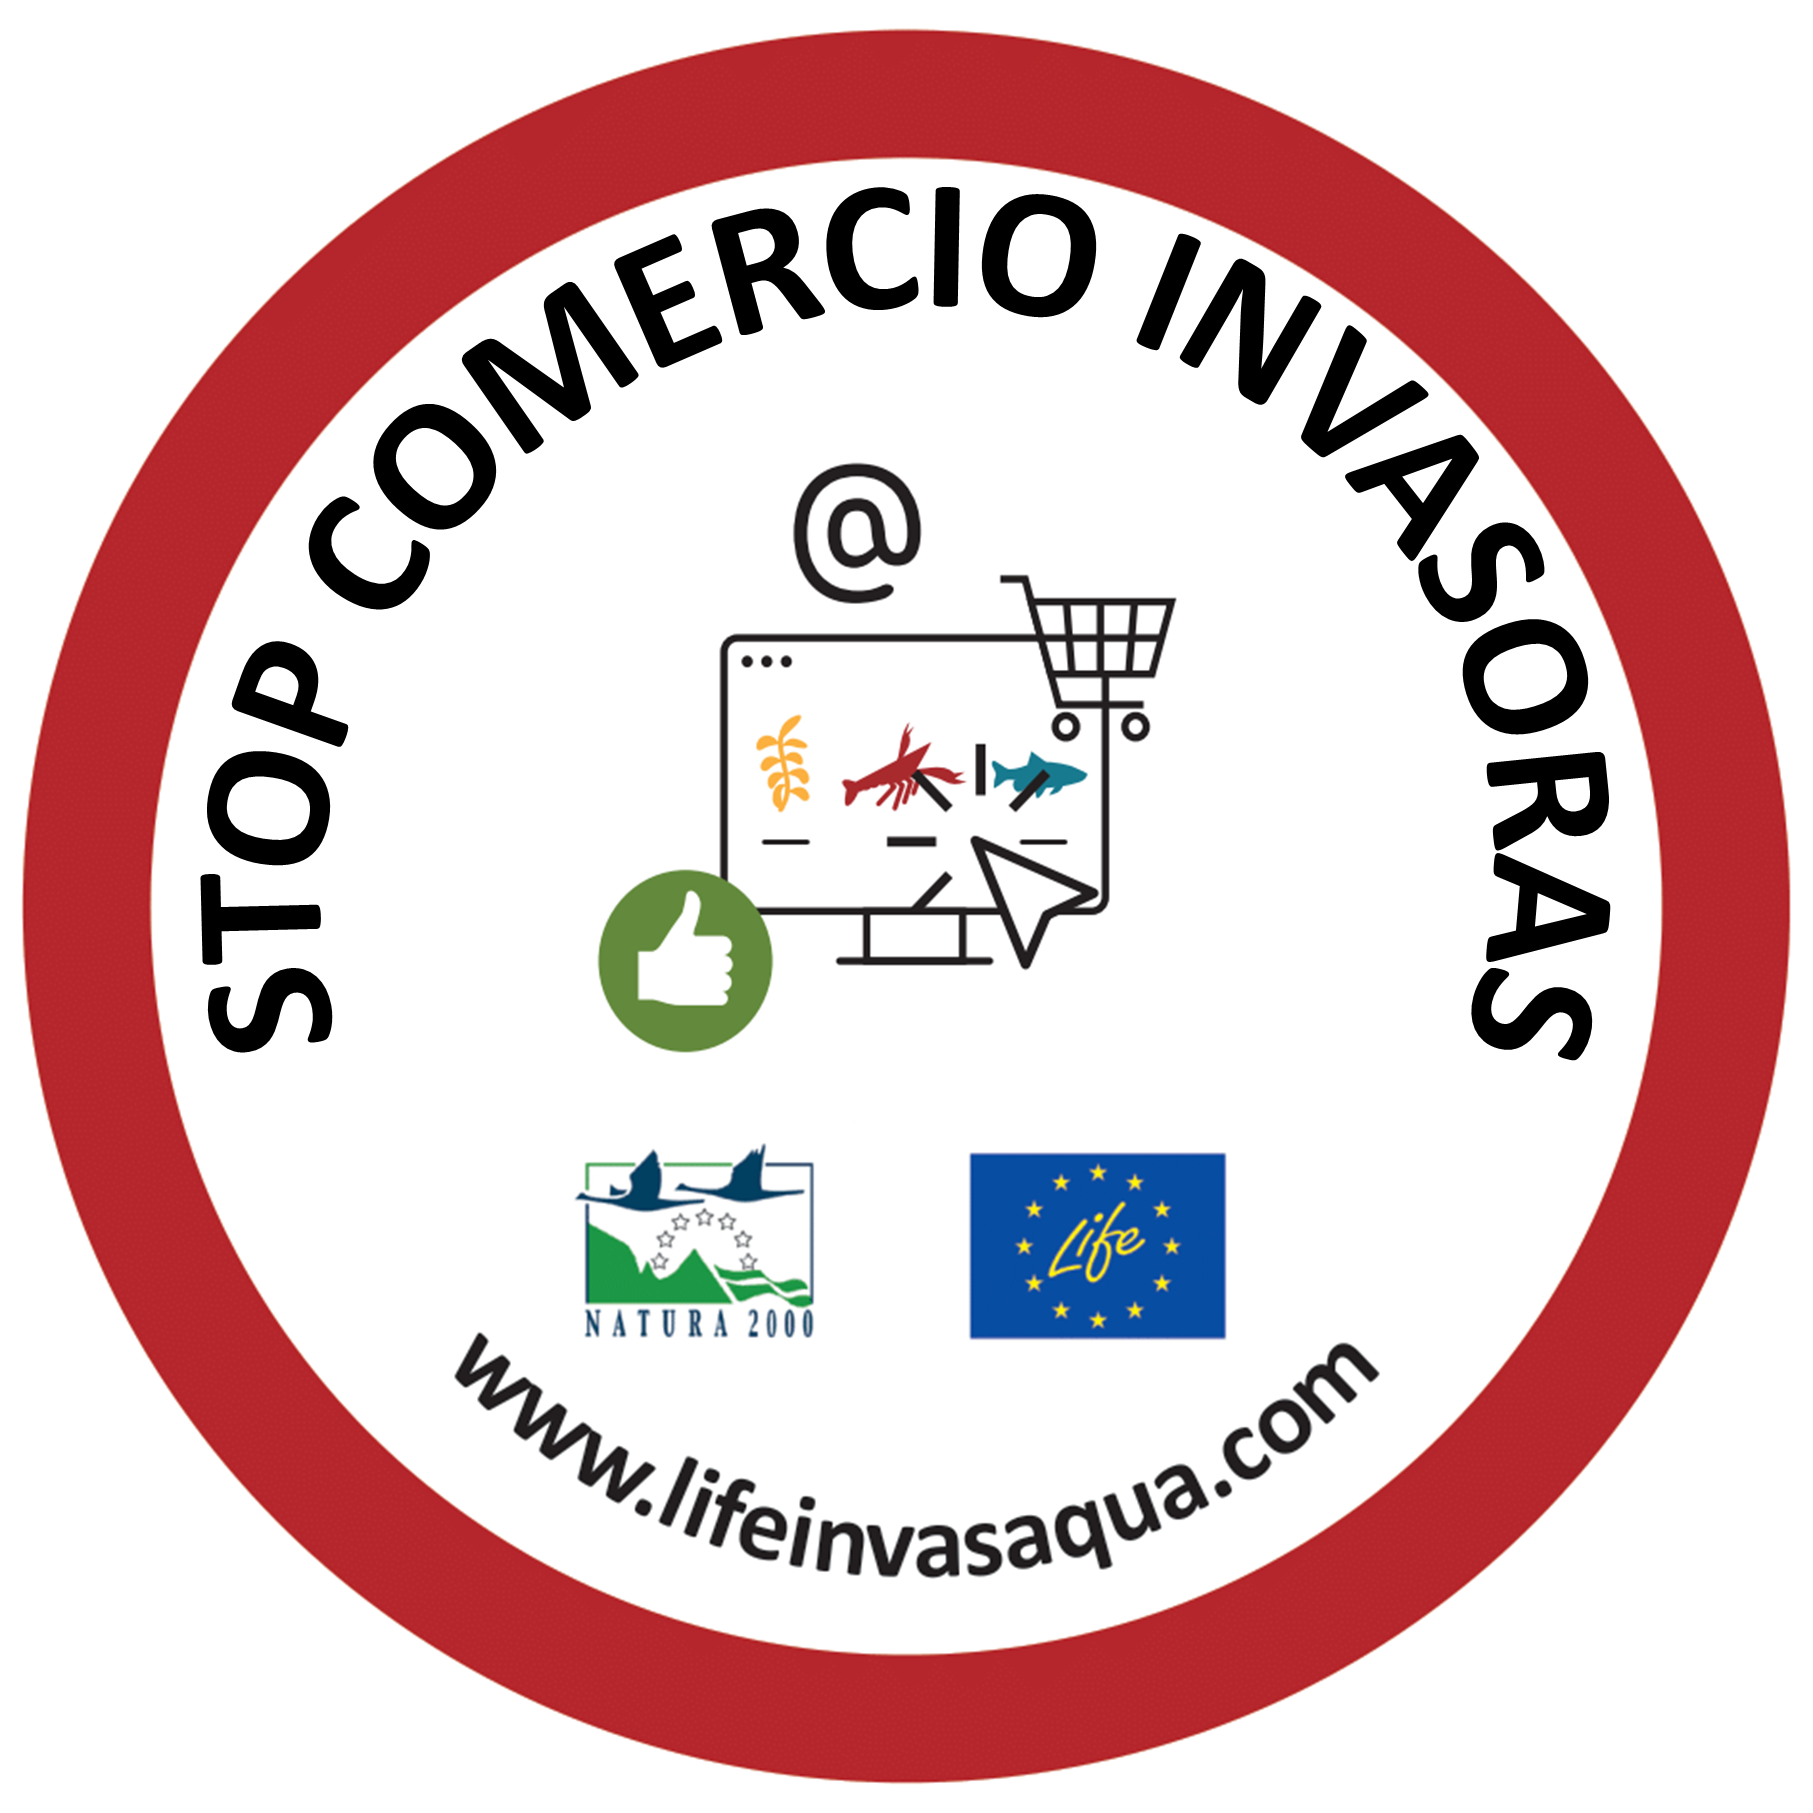 LIFE INVASAQUA lanza la campaña “Stop Comercio Invasoras” apoyada por entidades de España y Portugal